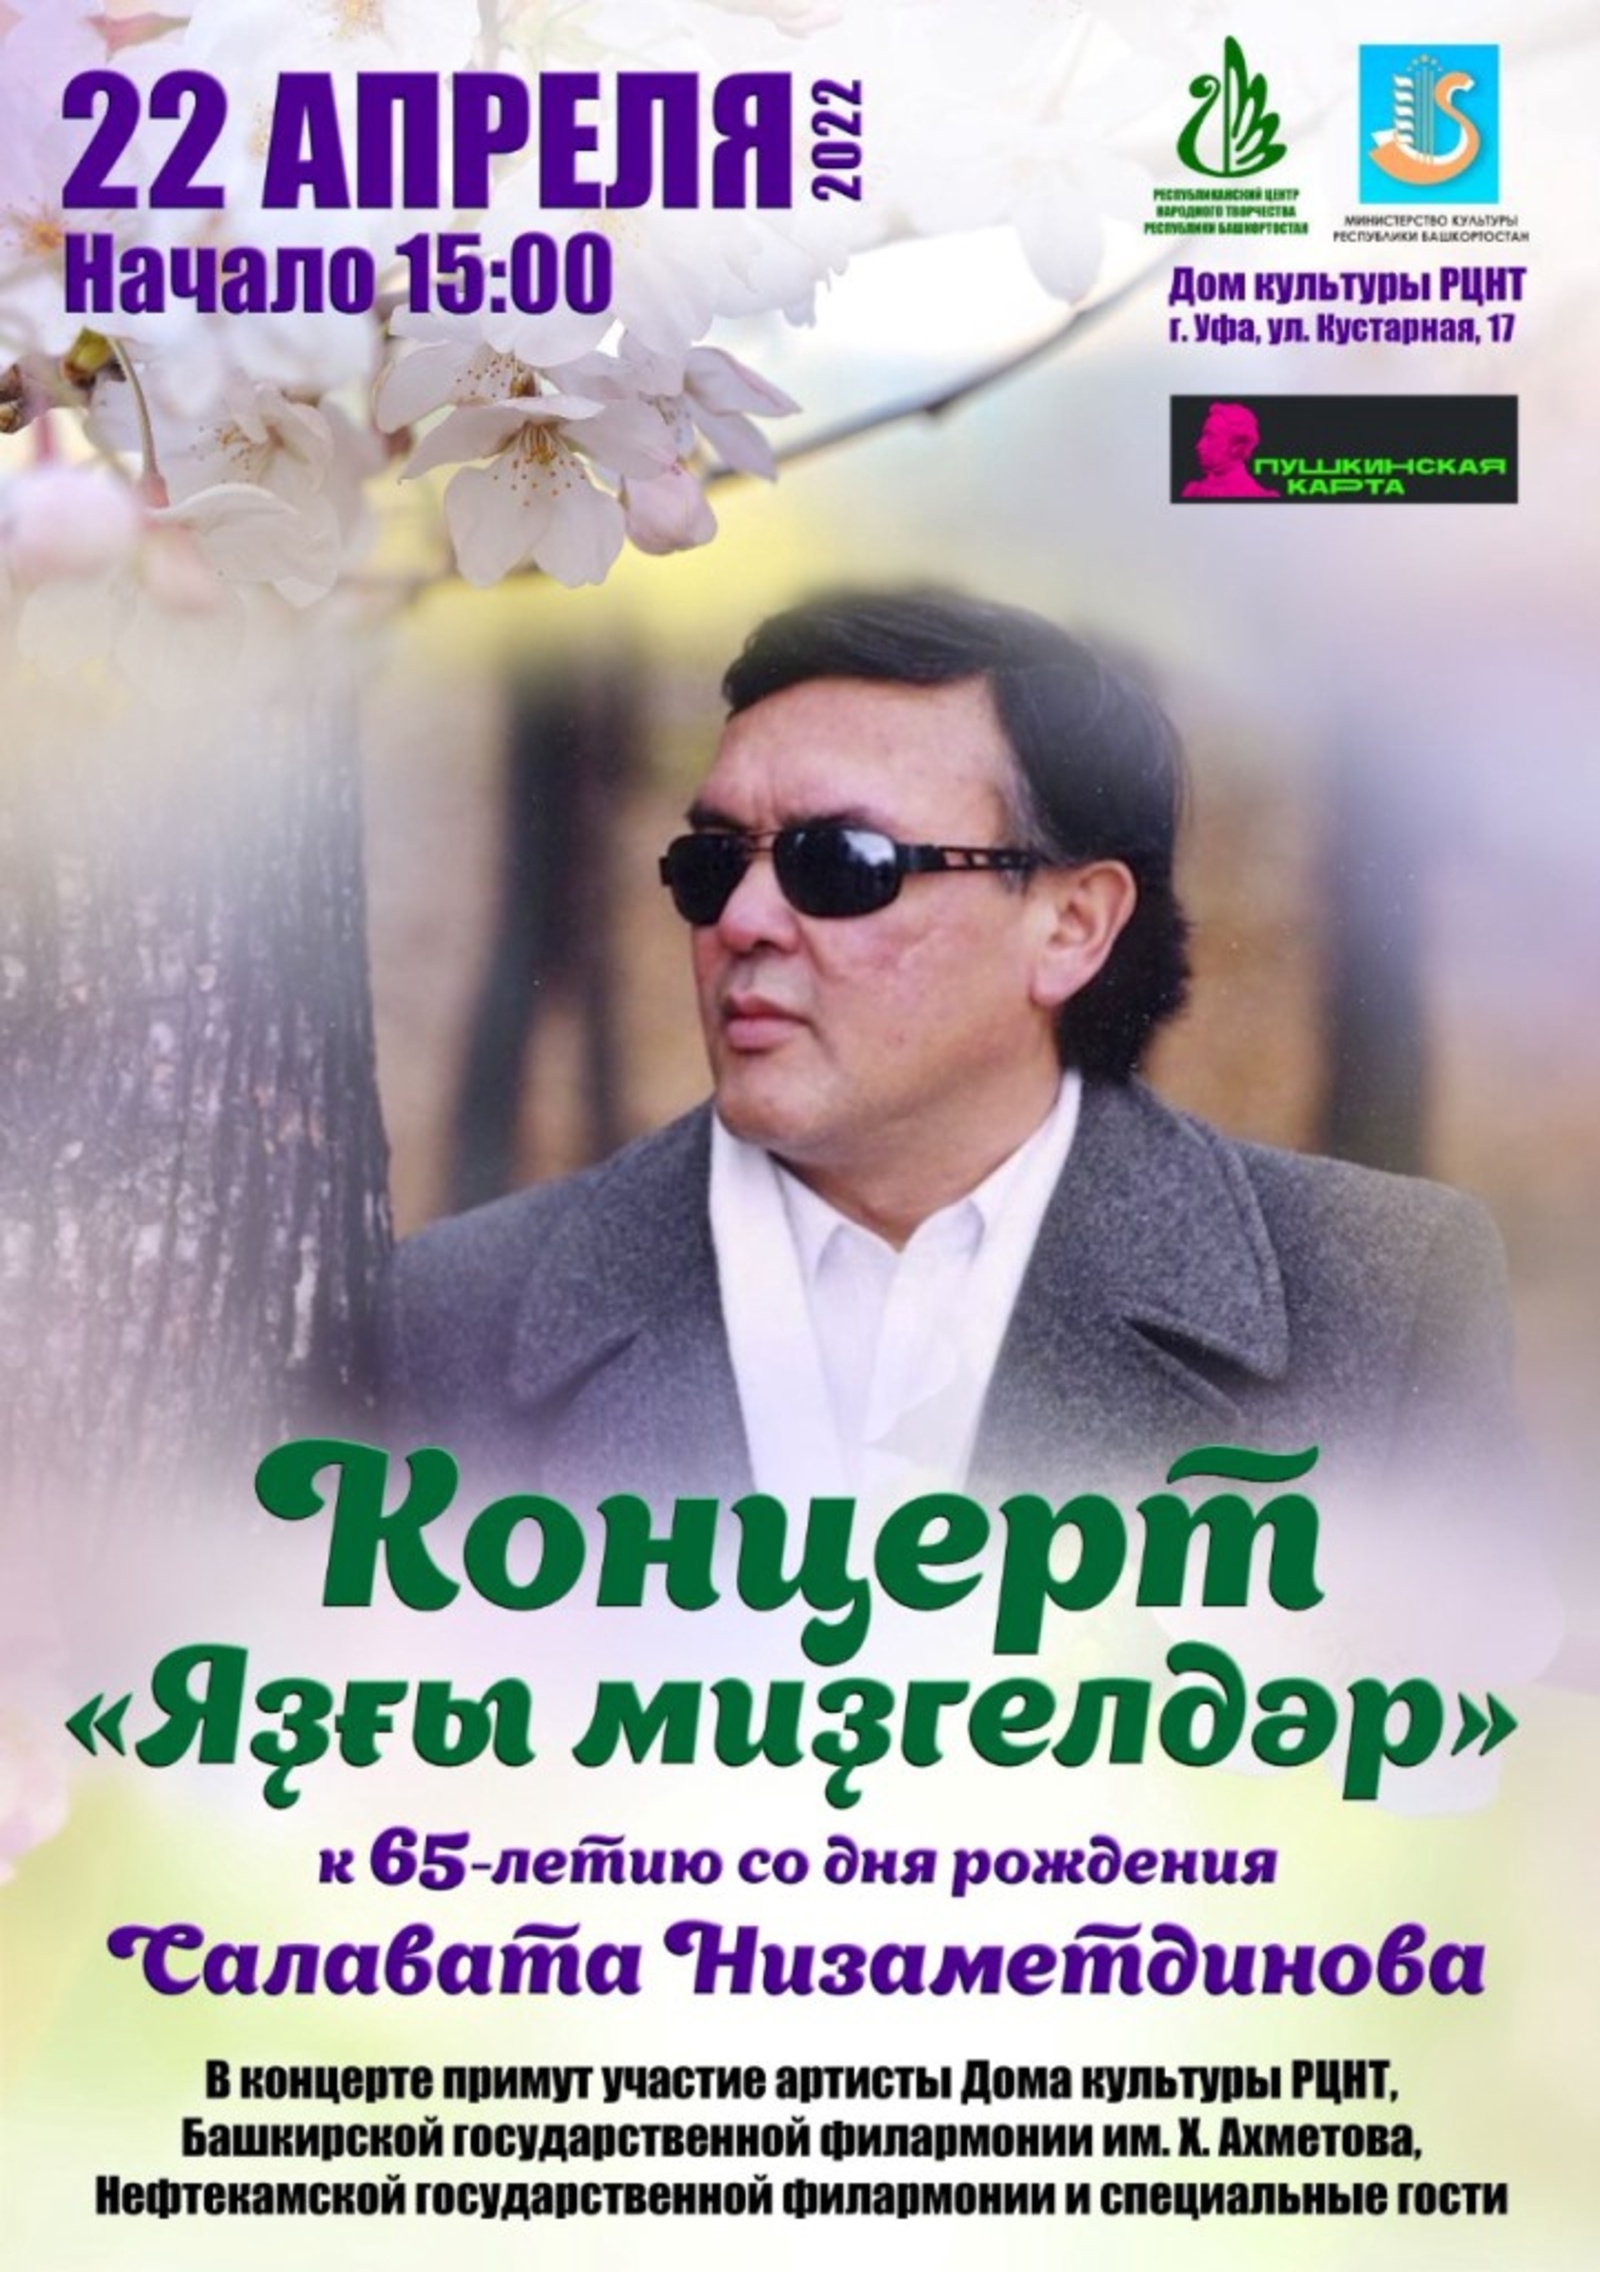 Состоится Вечер памяти башкирского композитора Салавата Низаметдинова